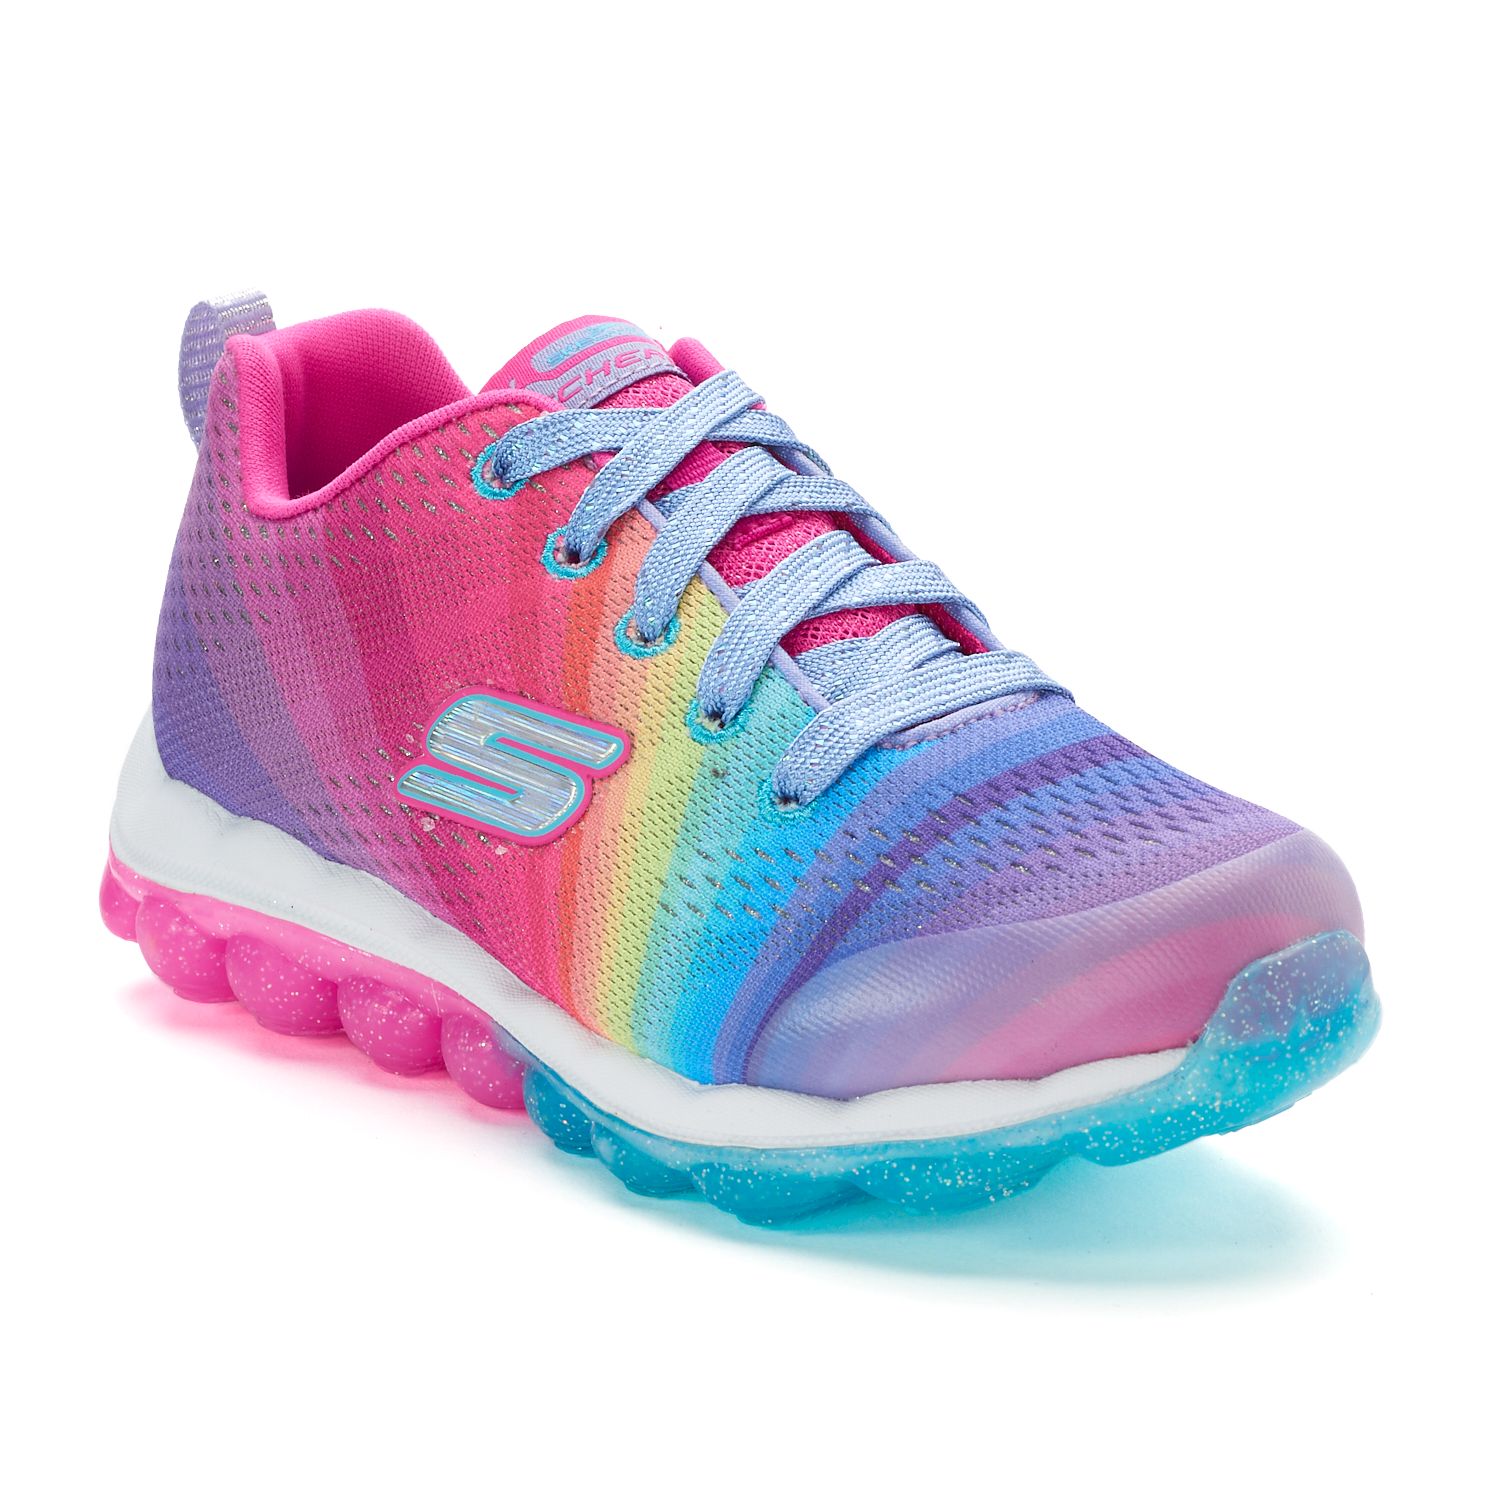 rainbow skechers sneakers